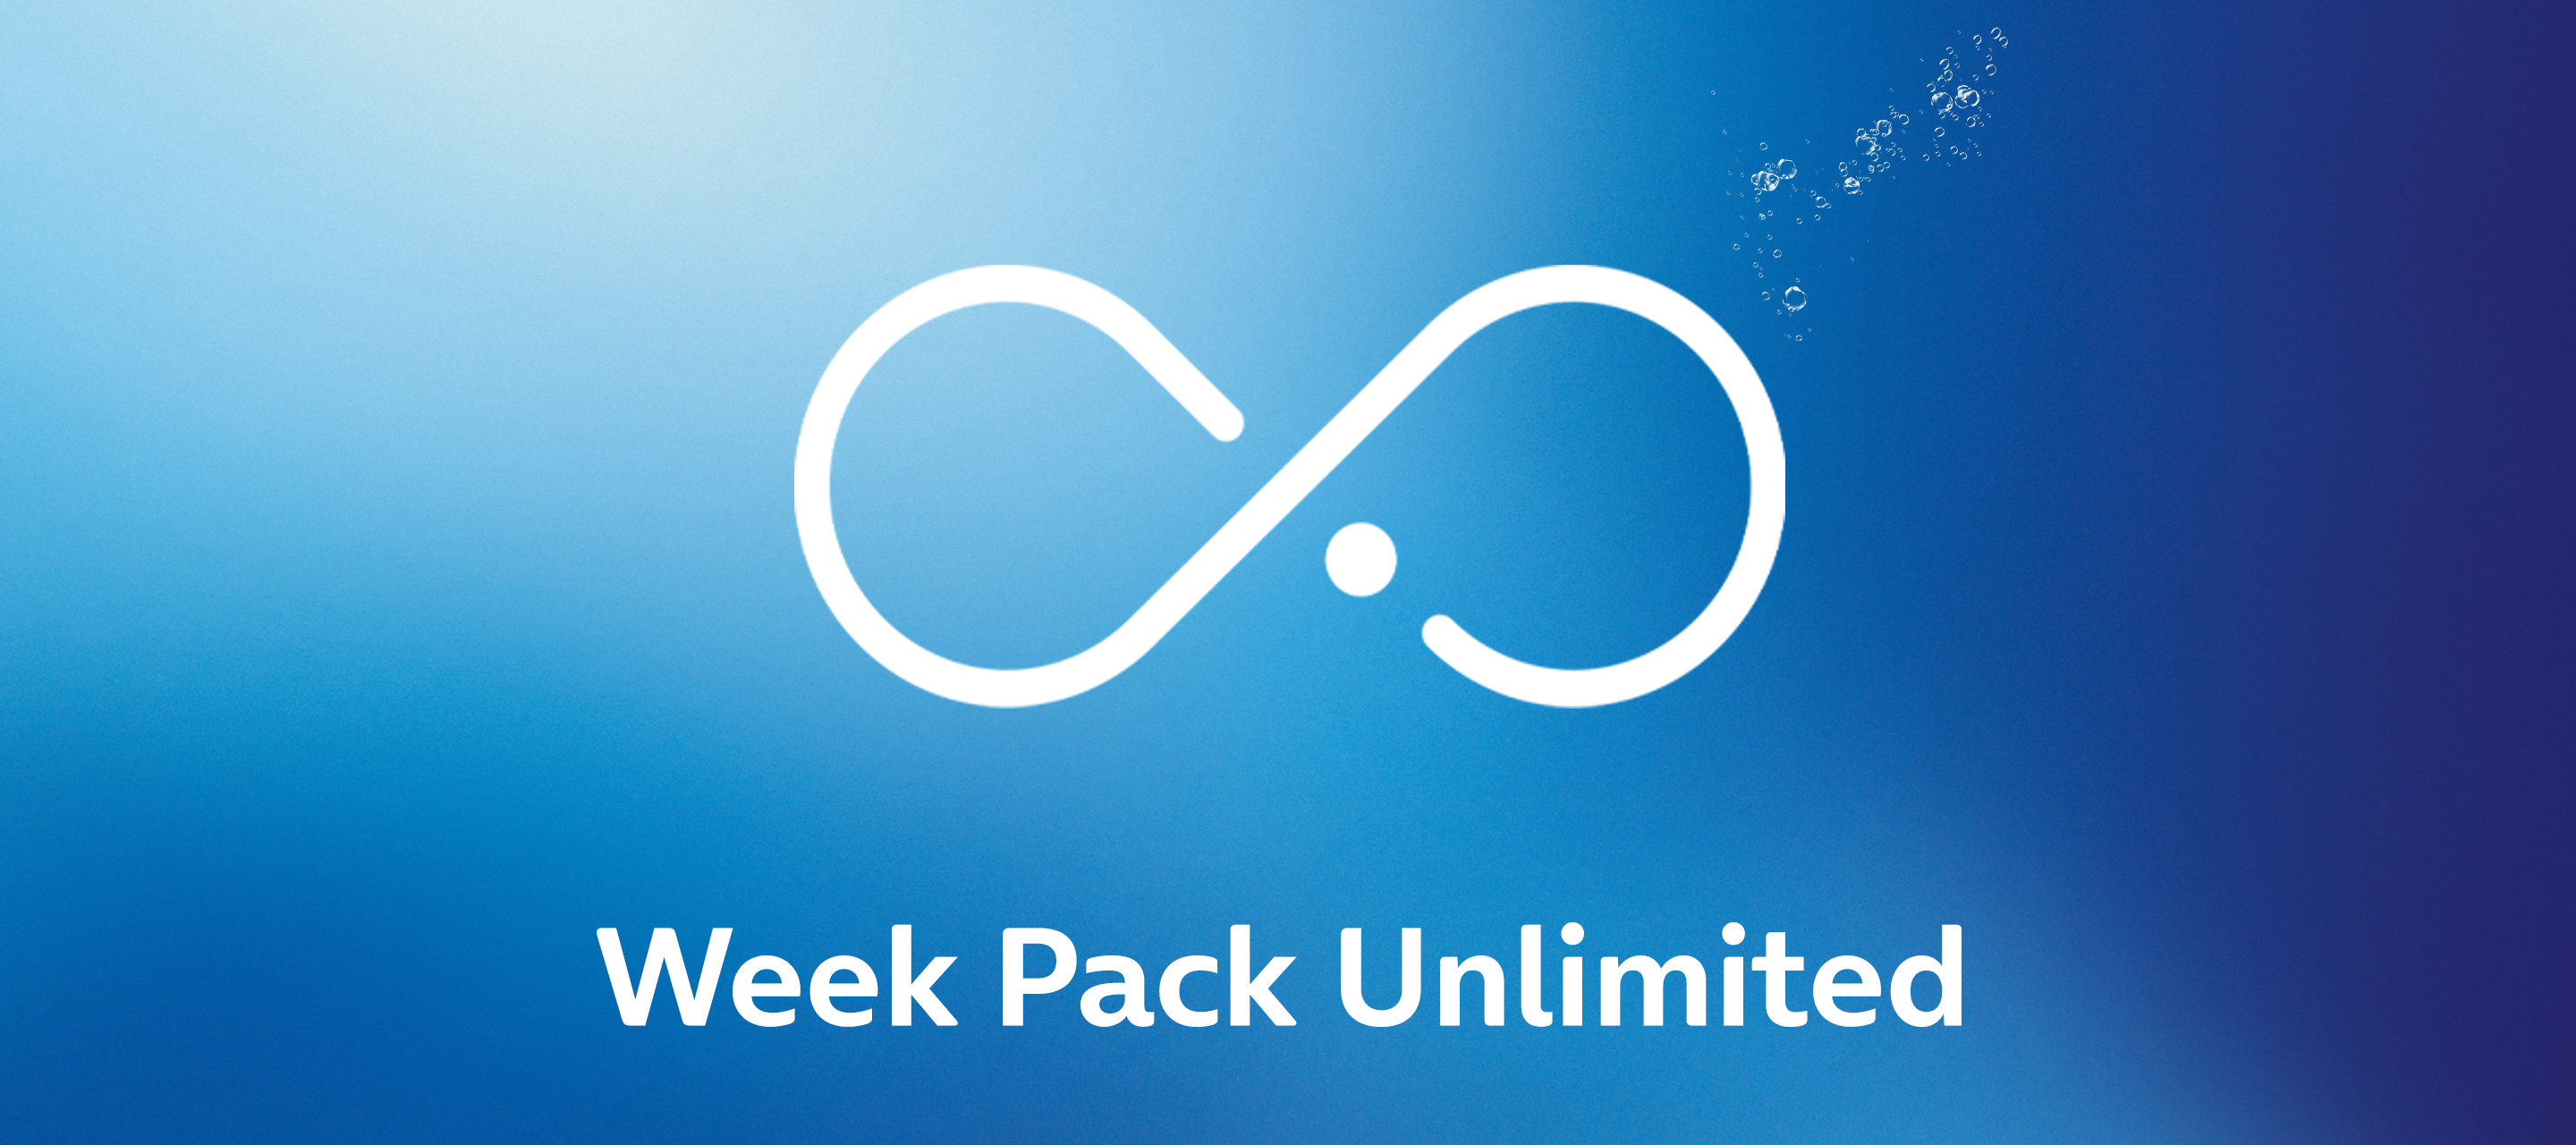 Sorglos surfen mit dem neuen O₂ Week Pack Unlimited